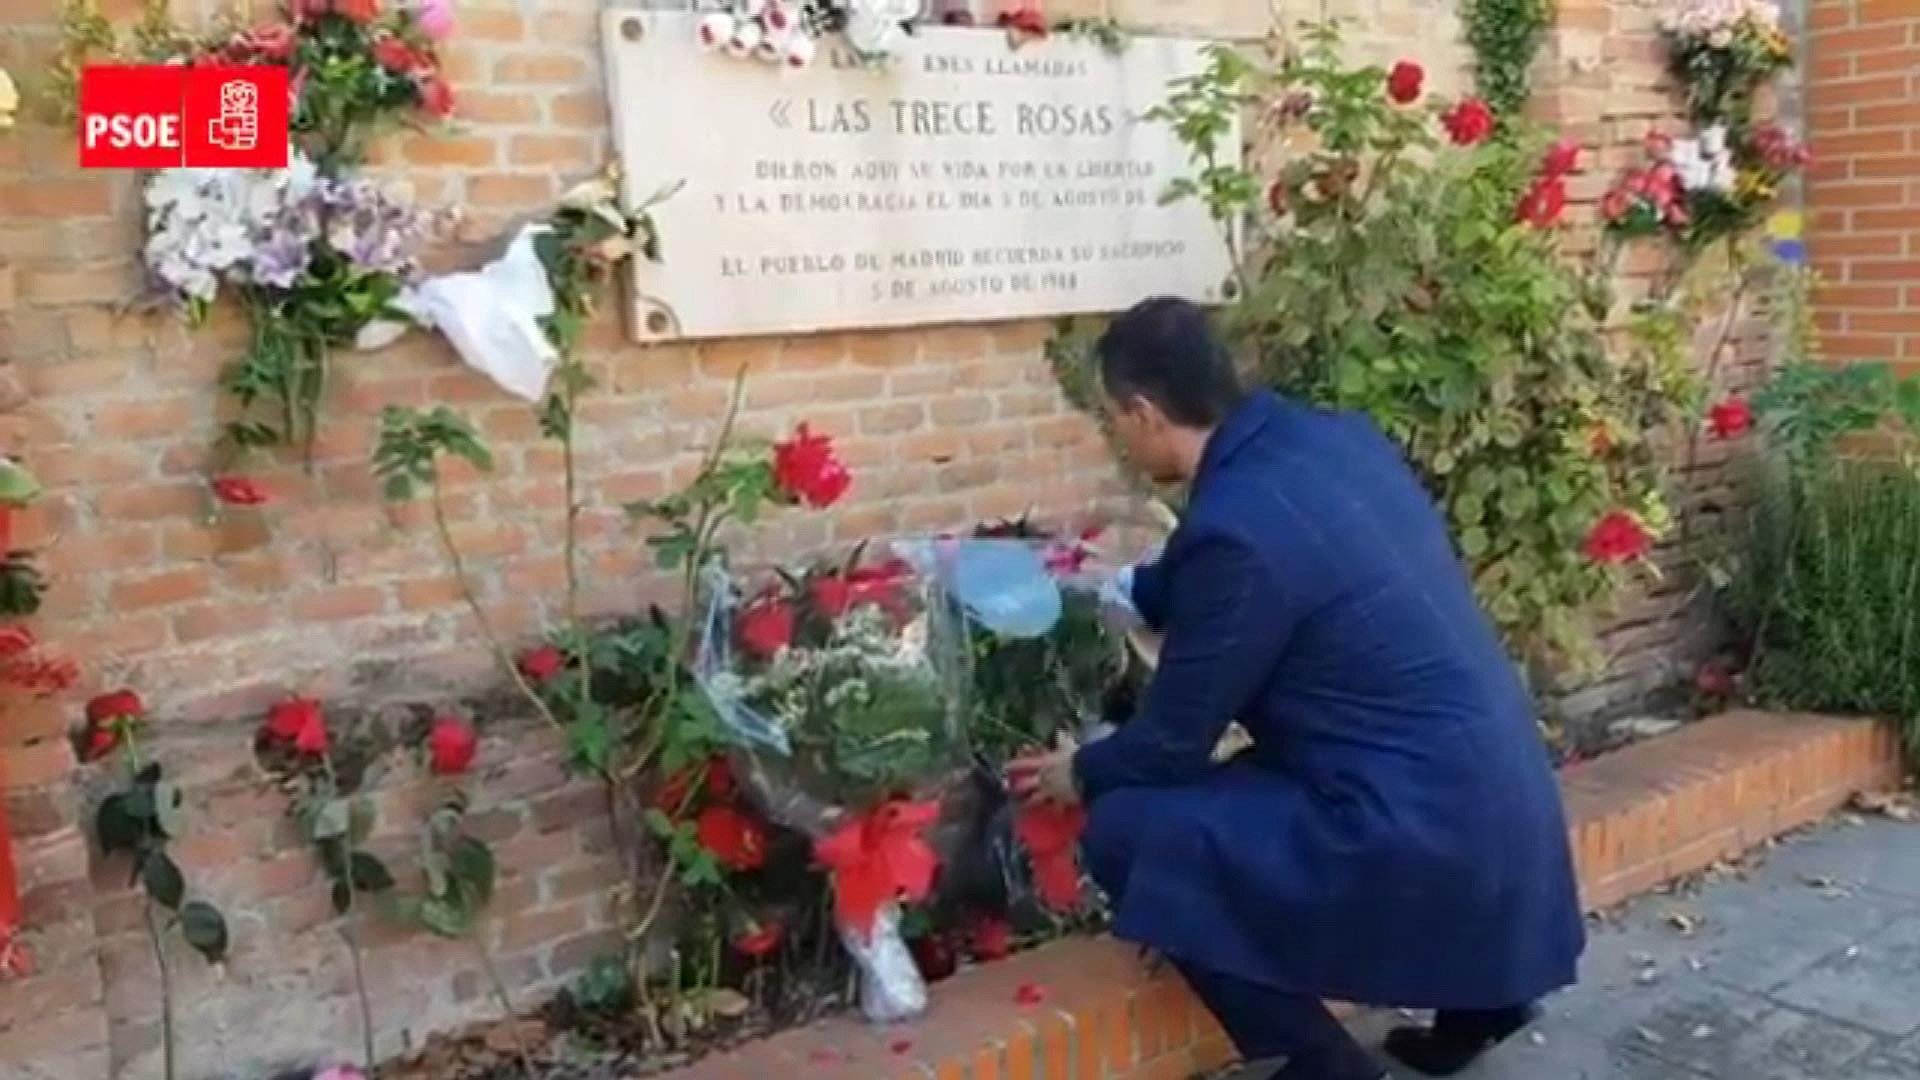 Sánchez deposita un ramo de flores en el memorial a las Trece Rosas